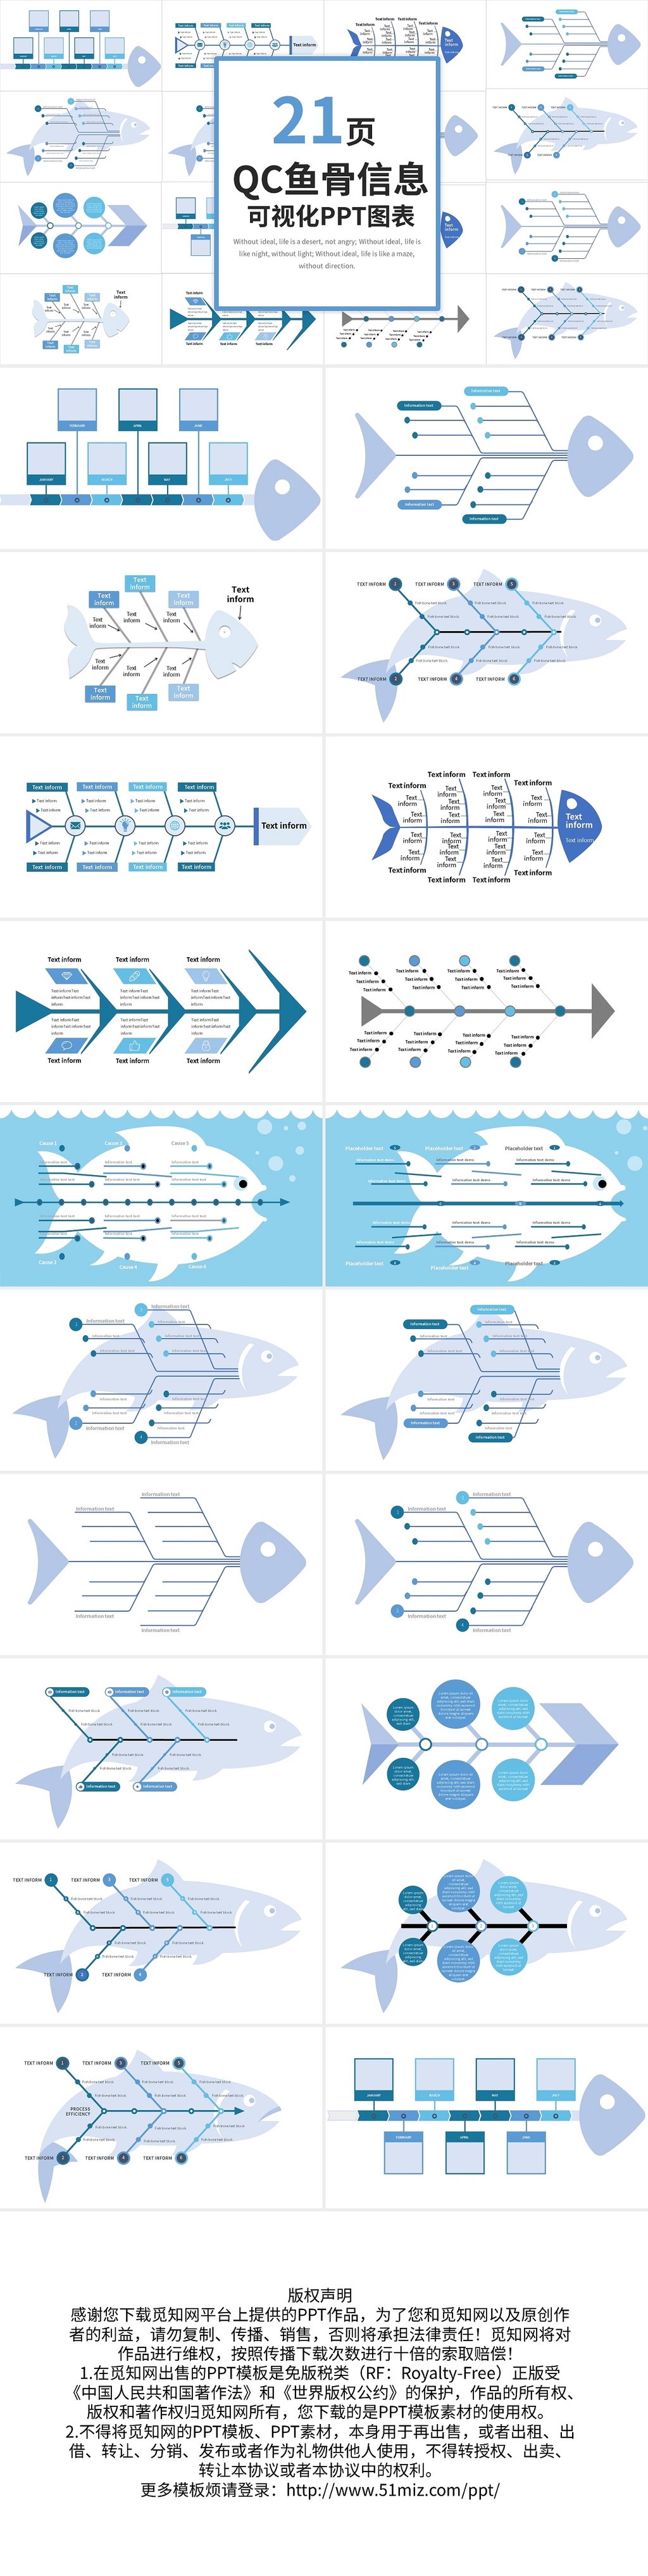 蓝色简约QC鱼骨信息可视化PPT图表PPT模板宣传PPT动态鱼骨图